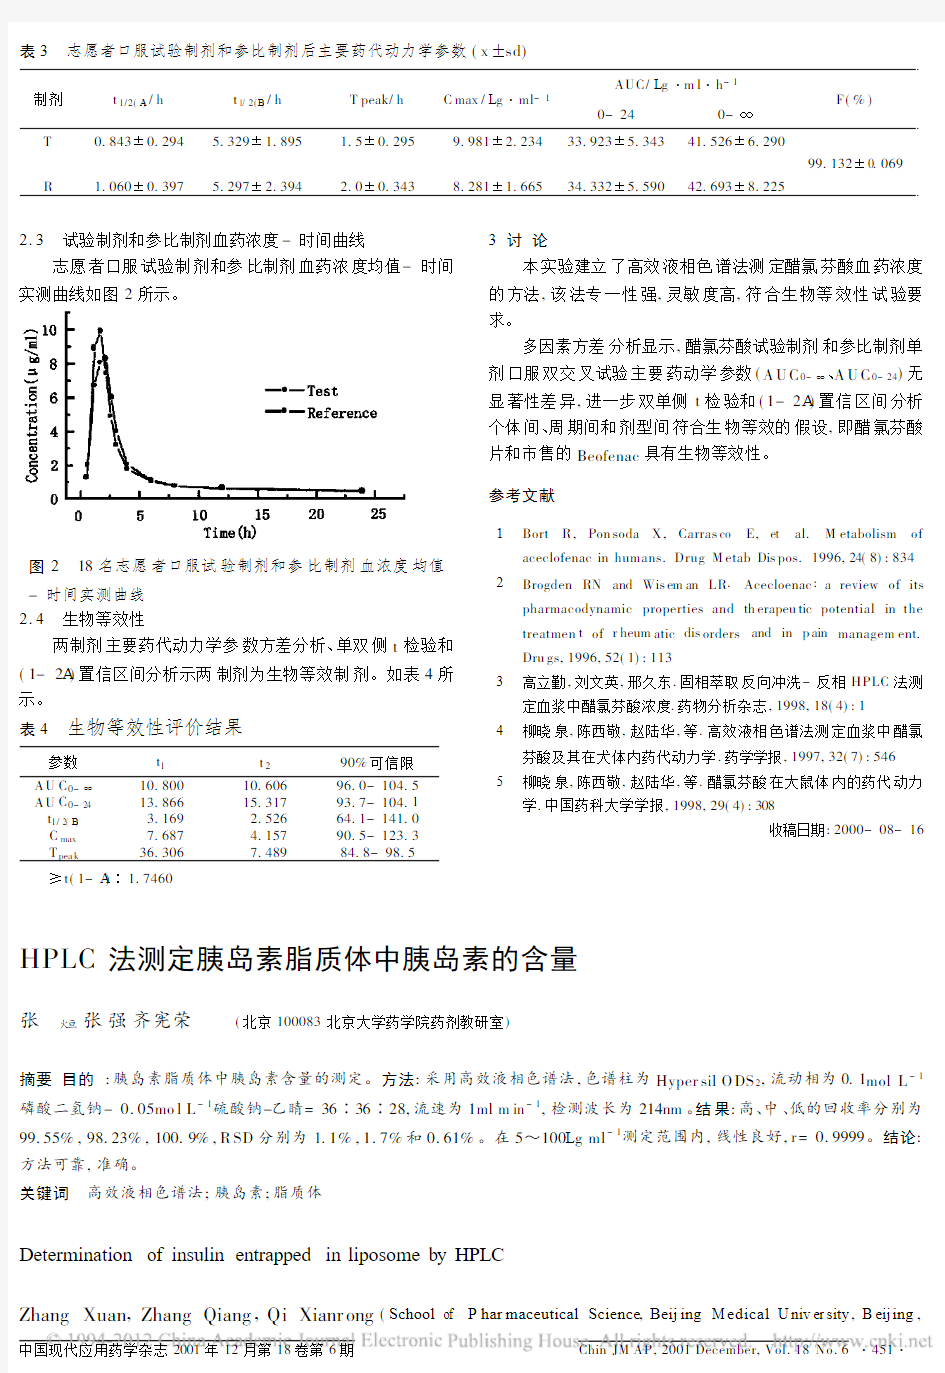 HPLC法测定胰岛素脂质体中胰岛素的含量